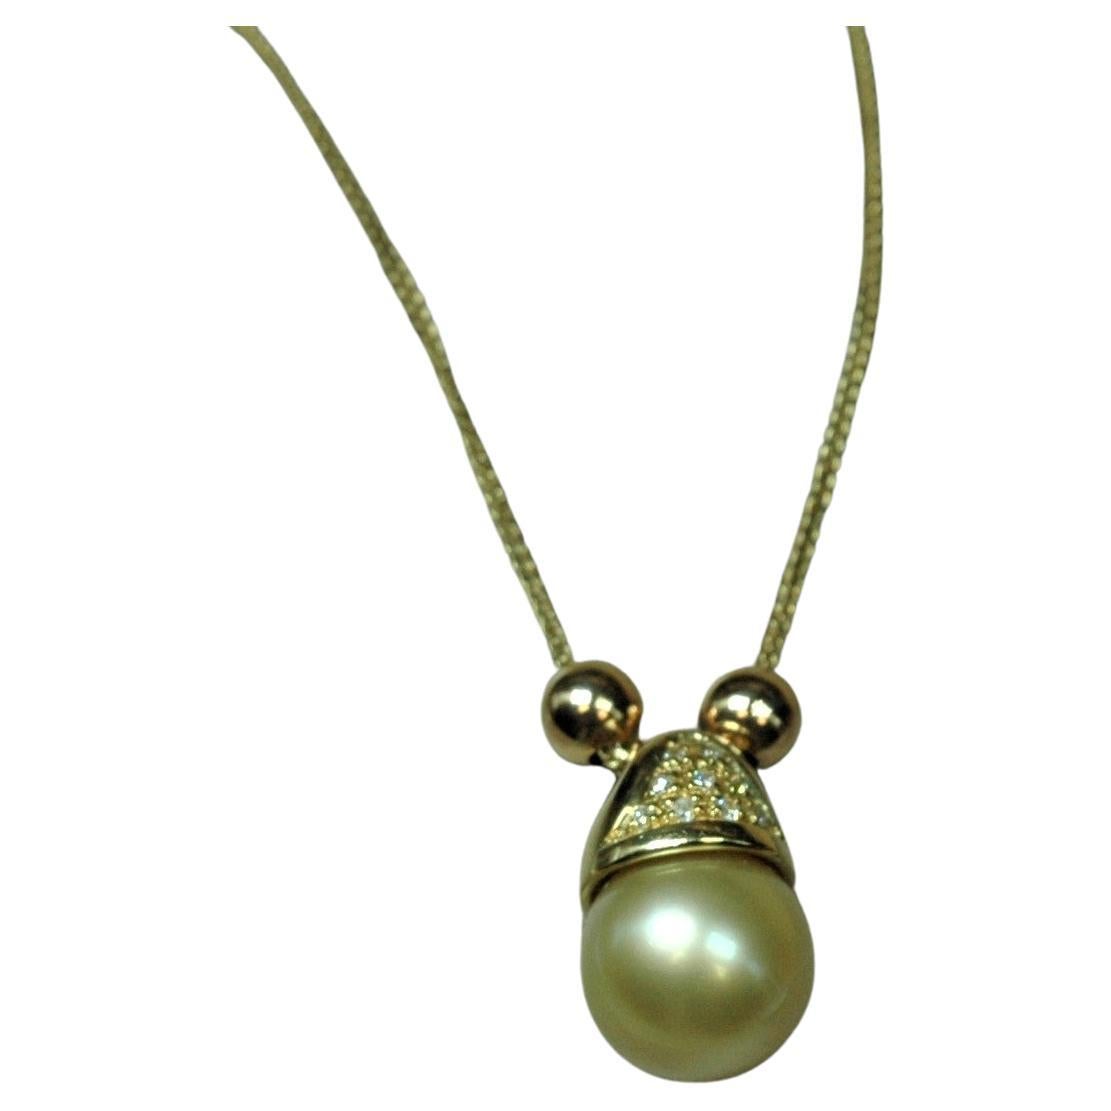 Très particulier ce collier en or jaune 18 kt. avec une perle en or montée avec une goupille fendue arrondie et agrémentée d'un petit pavé de brillants. Le pendentif glisse en douceur sur la chaîne, accompagné latéralement par deux petites sphères